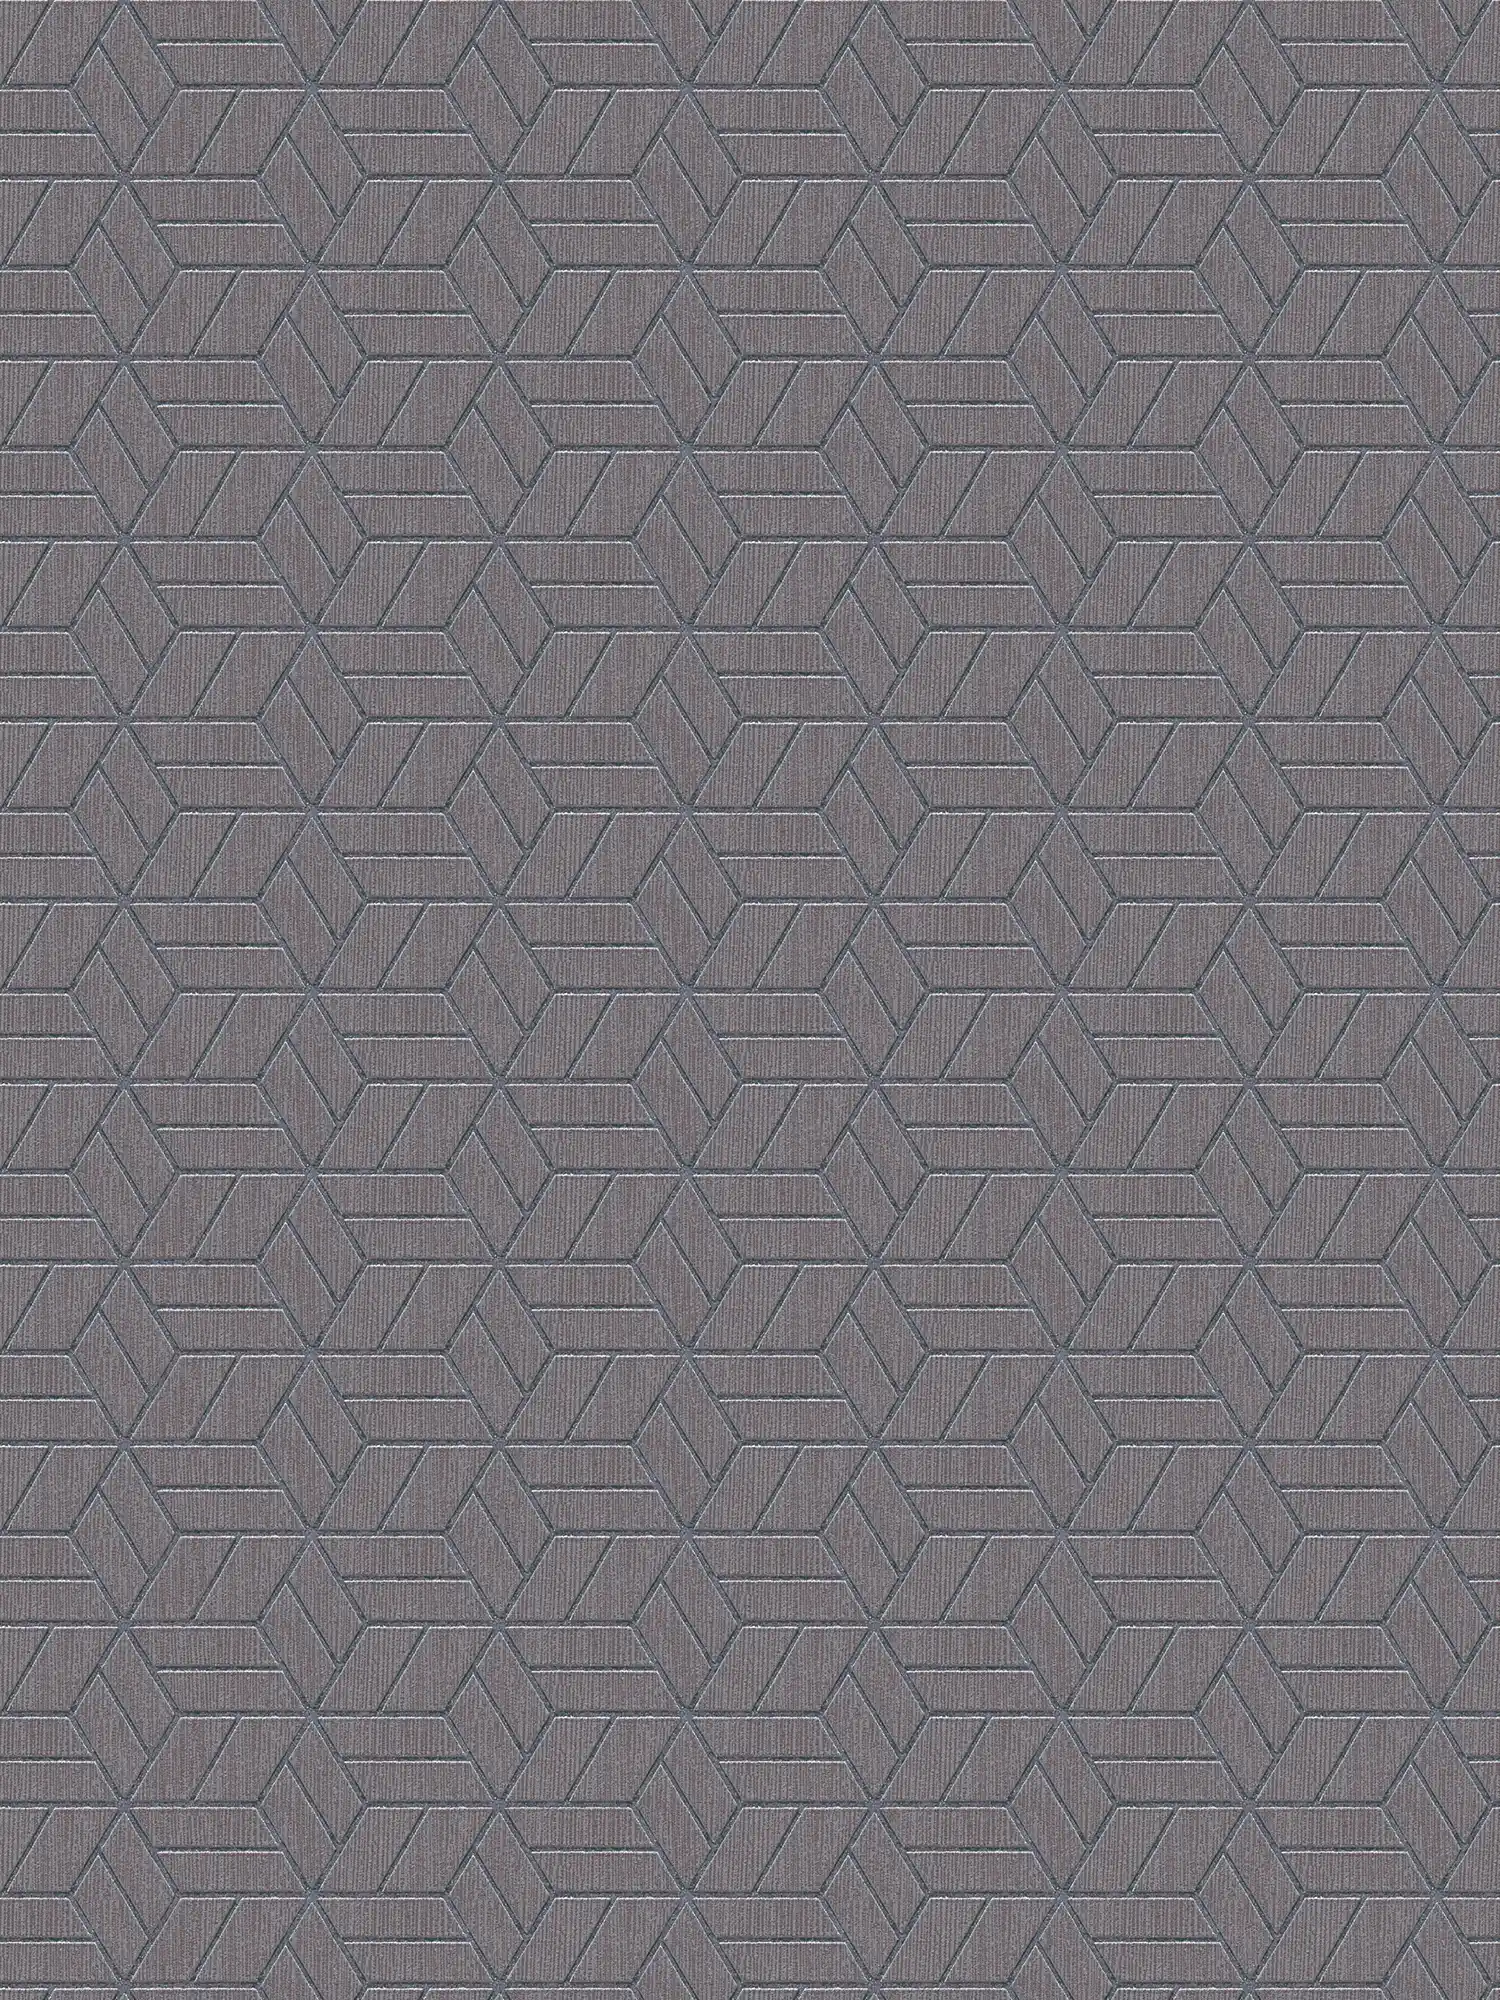 Papier peint motif géométrique & effet pailleté - gris, argenté
